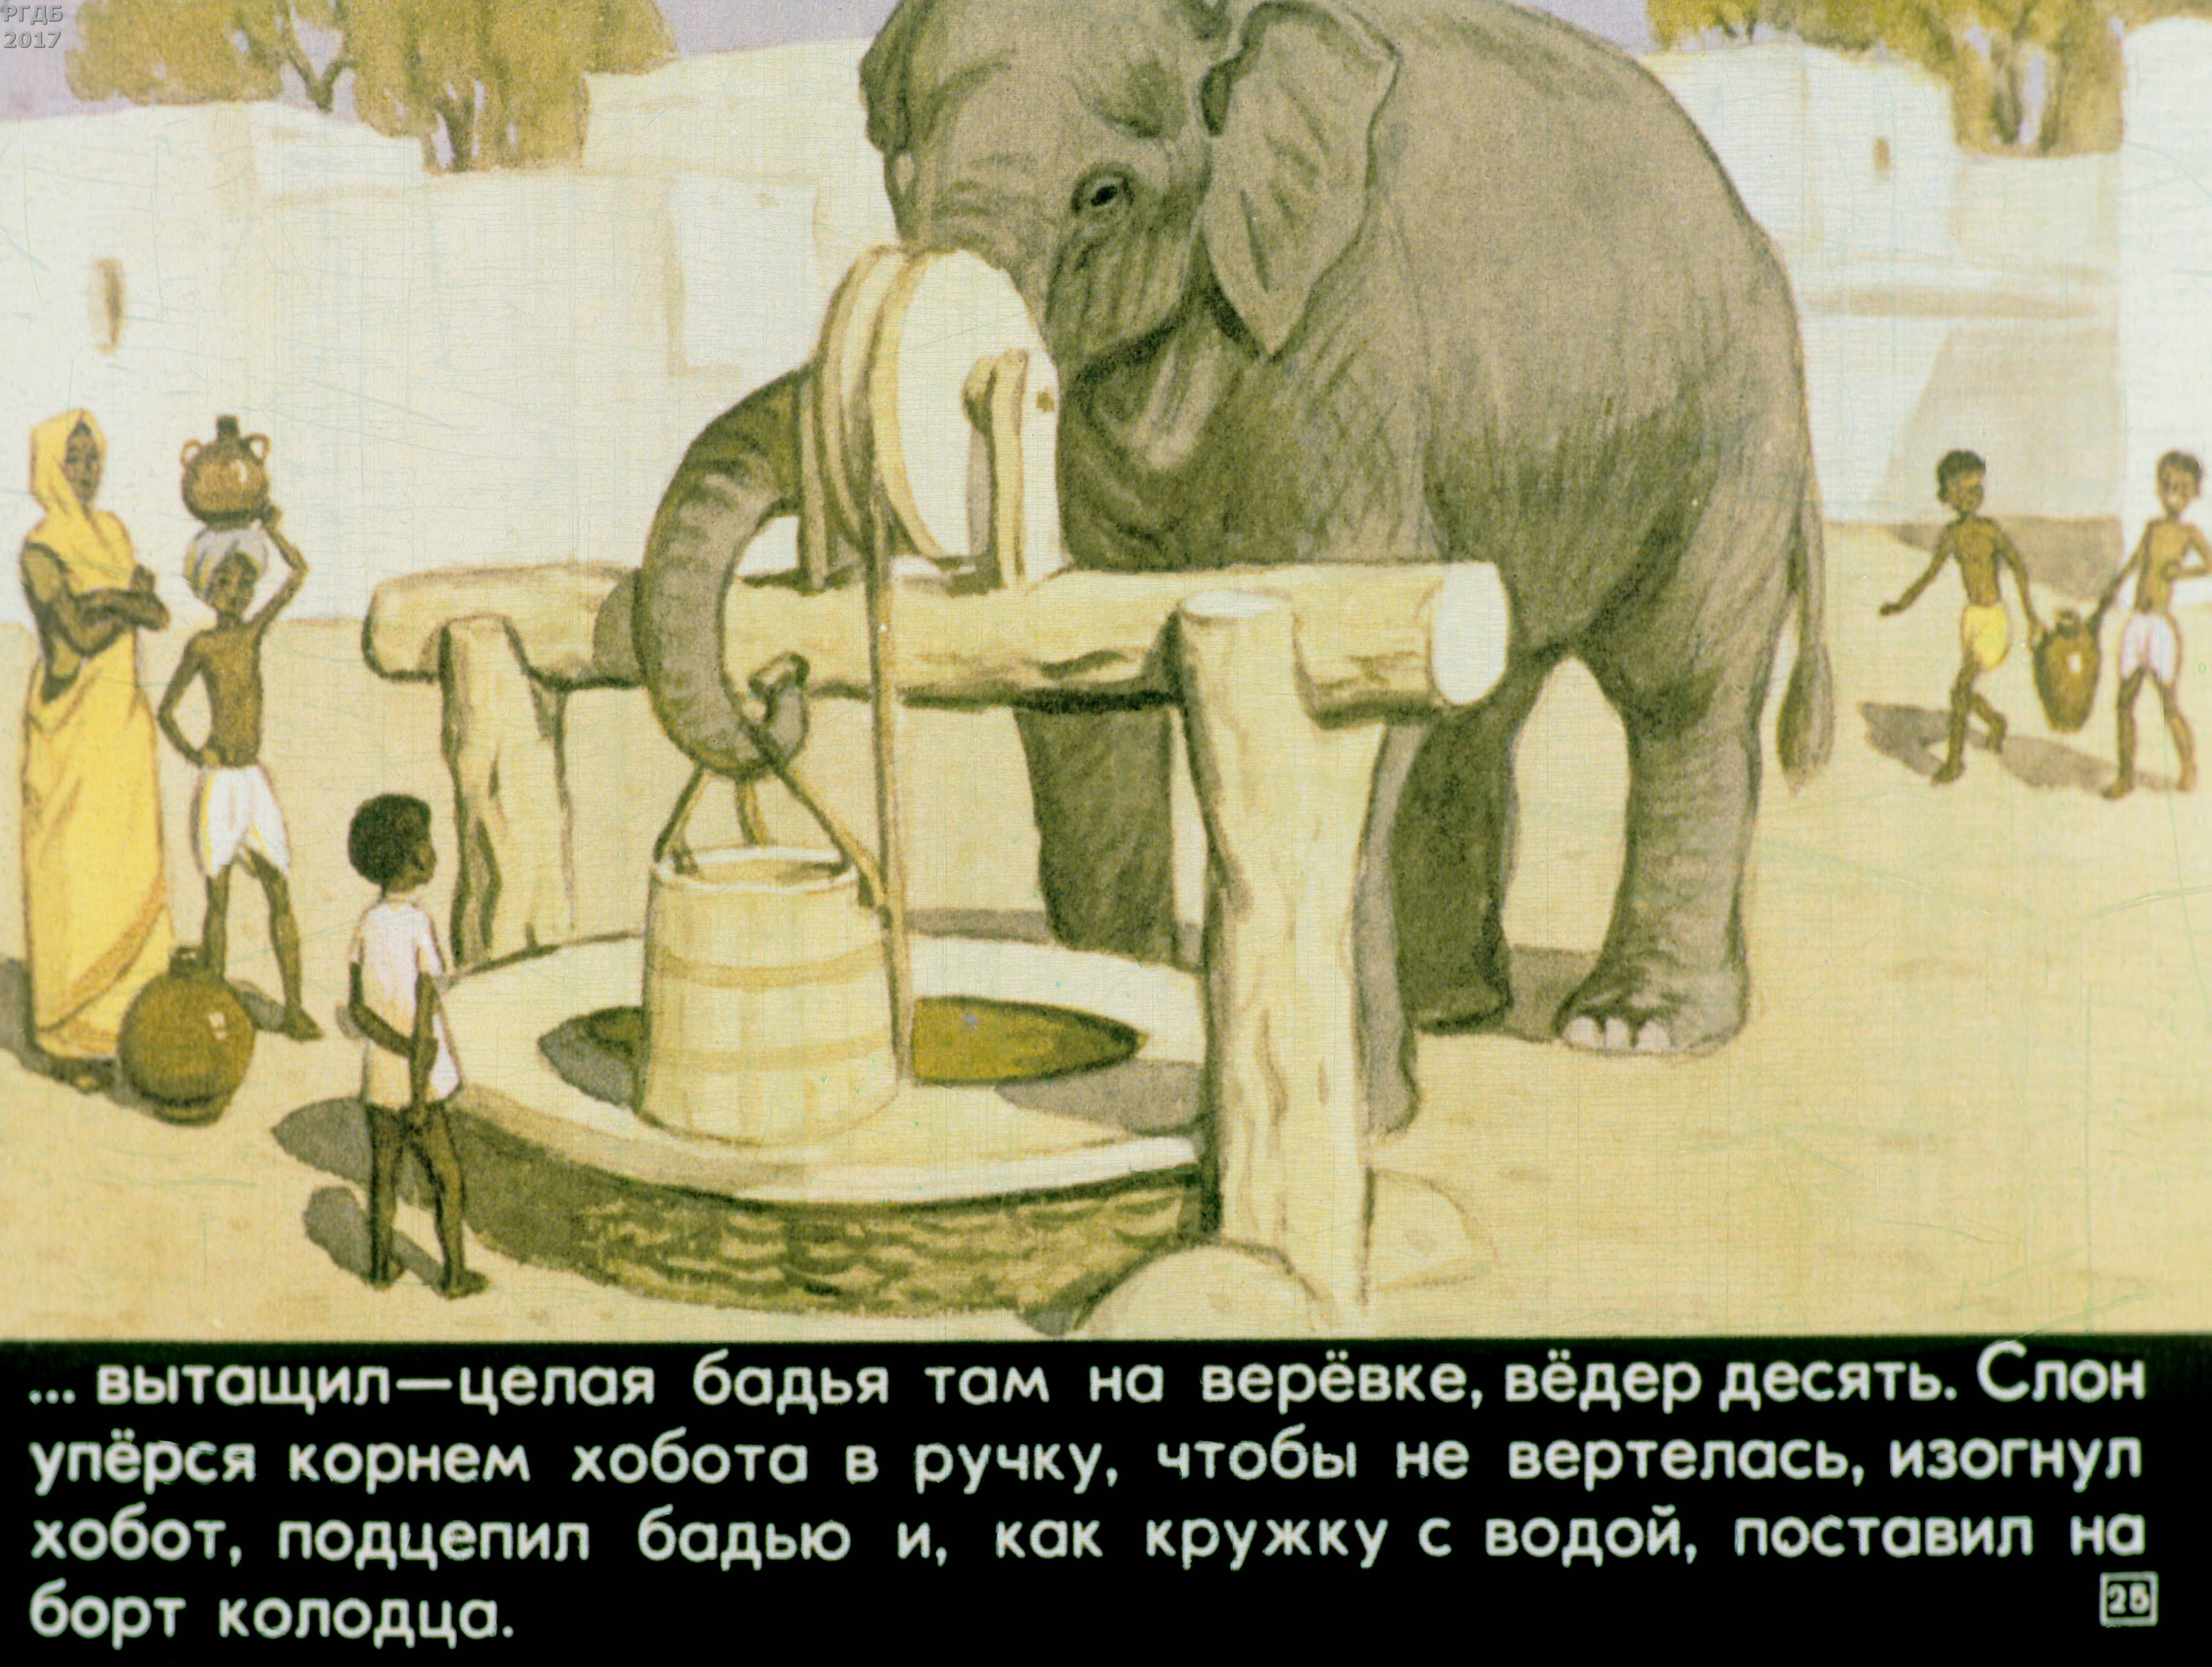 Слоновые истории. Житков б.с. "про слона". Житков про слона. Житков про слона иллюстрации.